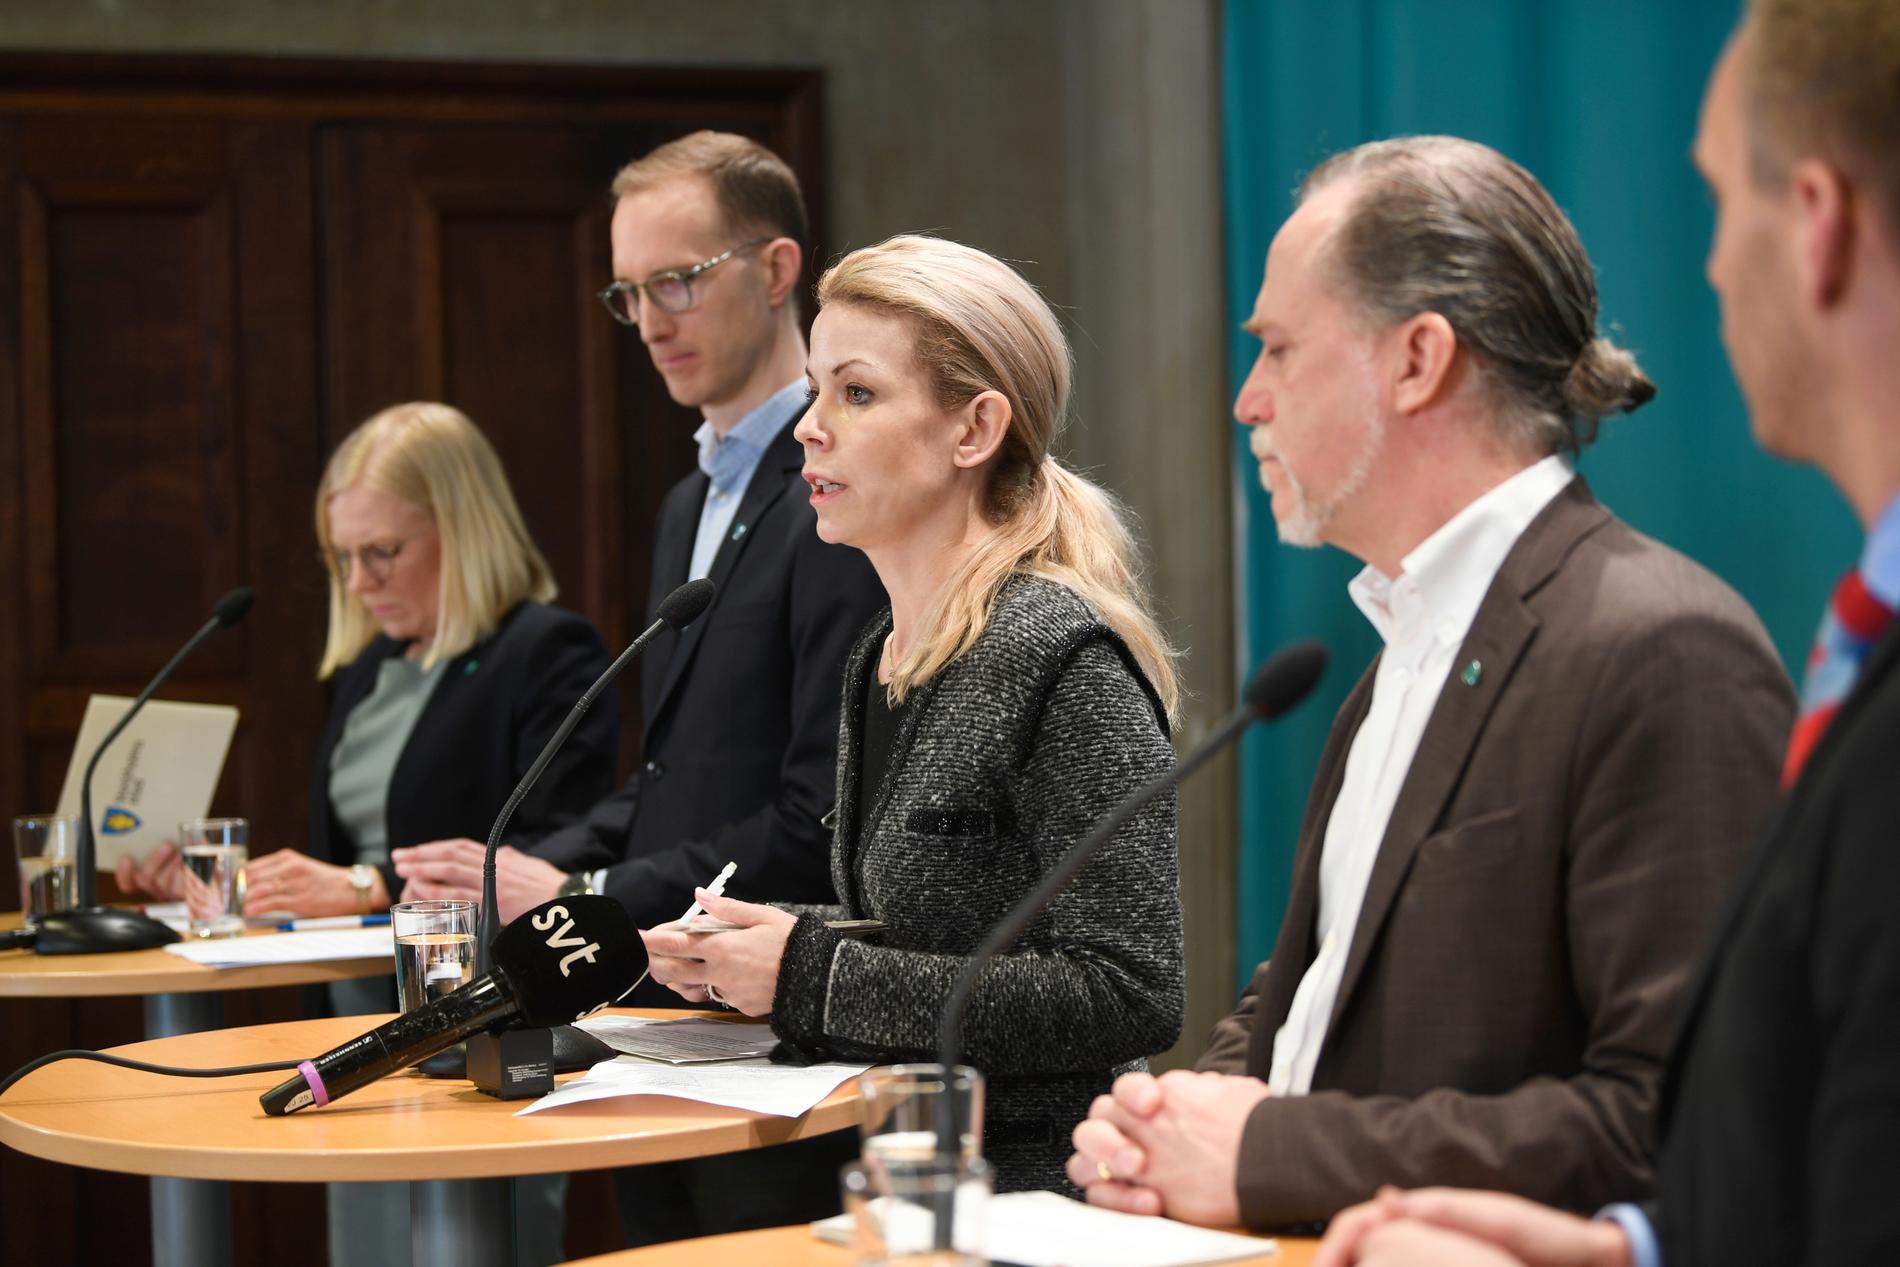 Stockholms grönblå majoritet – Karin Ernlund (C), Jan Jönsson (L), Anna König Jerlmyr (M), Daniel Helldén (MP) och Erik Slottner (KD) – presenterar ett krispaket för stadens småföretag.